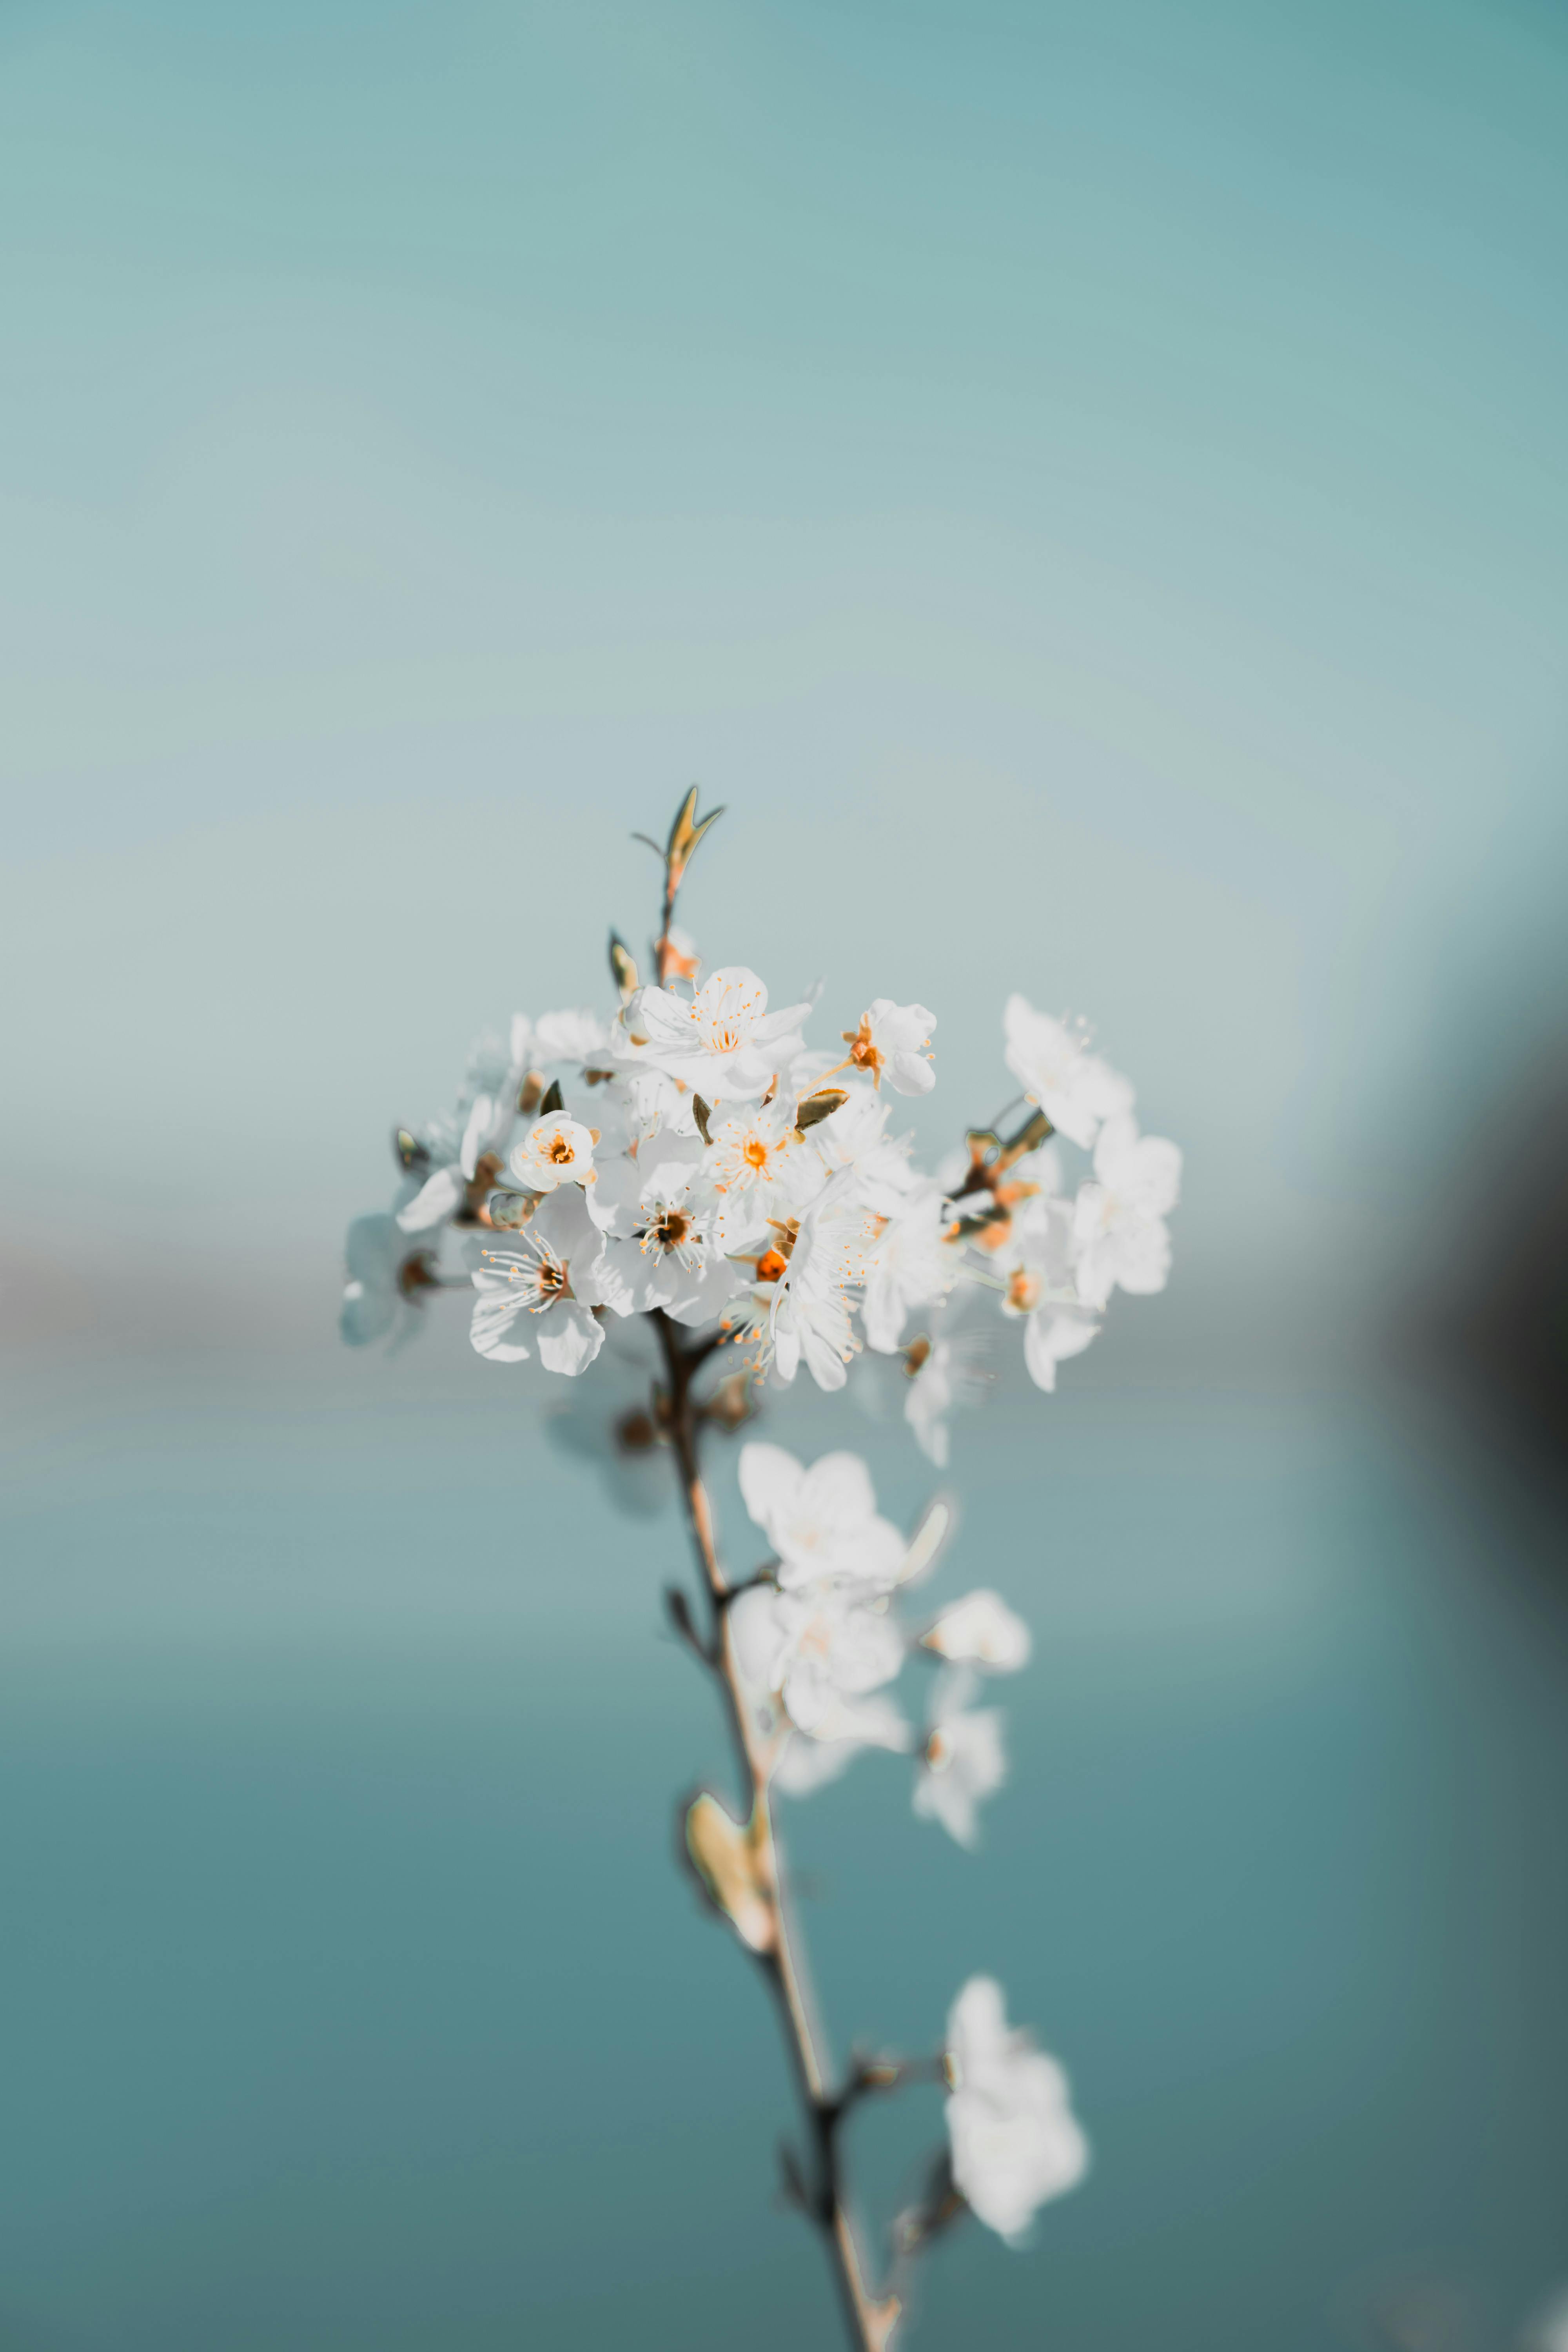 Hãy xem bức ảnh này về một bông hoa trắng nhỏ tuyệt đẹp với lá xanh tươi mát, và điều đặc biệt là bạn chỉ cần trả giá miễn phí. Đây là một công việc nhỏ nhưng có thể mang lại niềm vui và sự thư giãn cho cuộc sống của bạn.